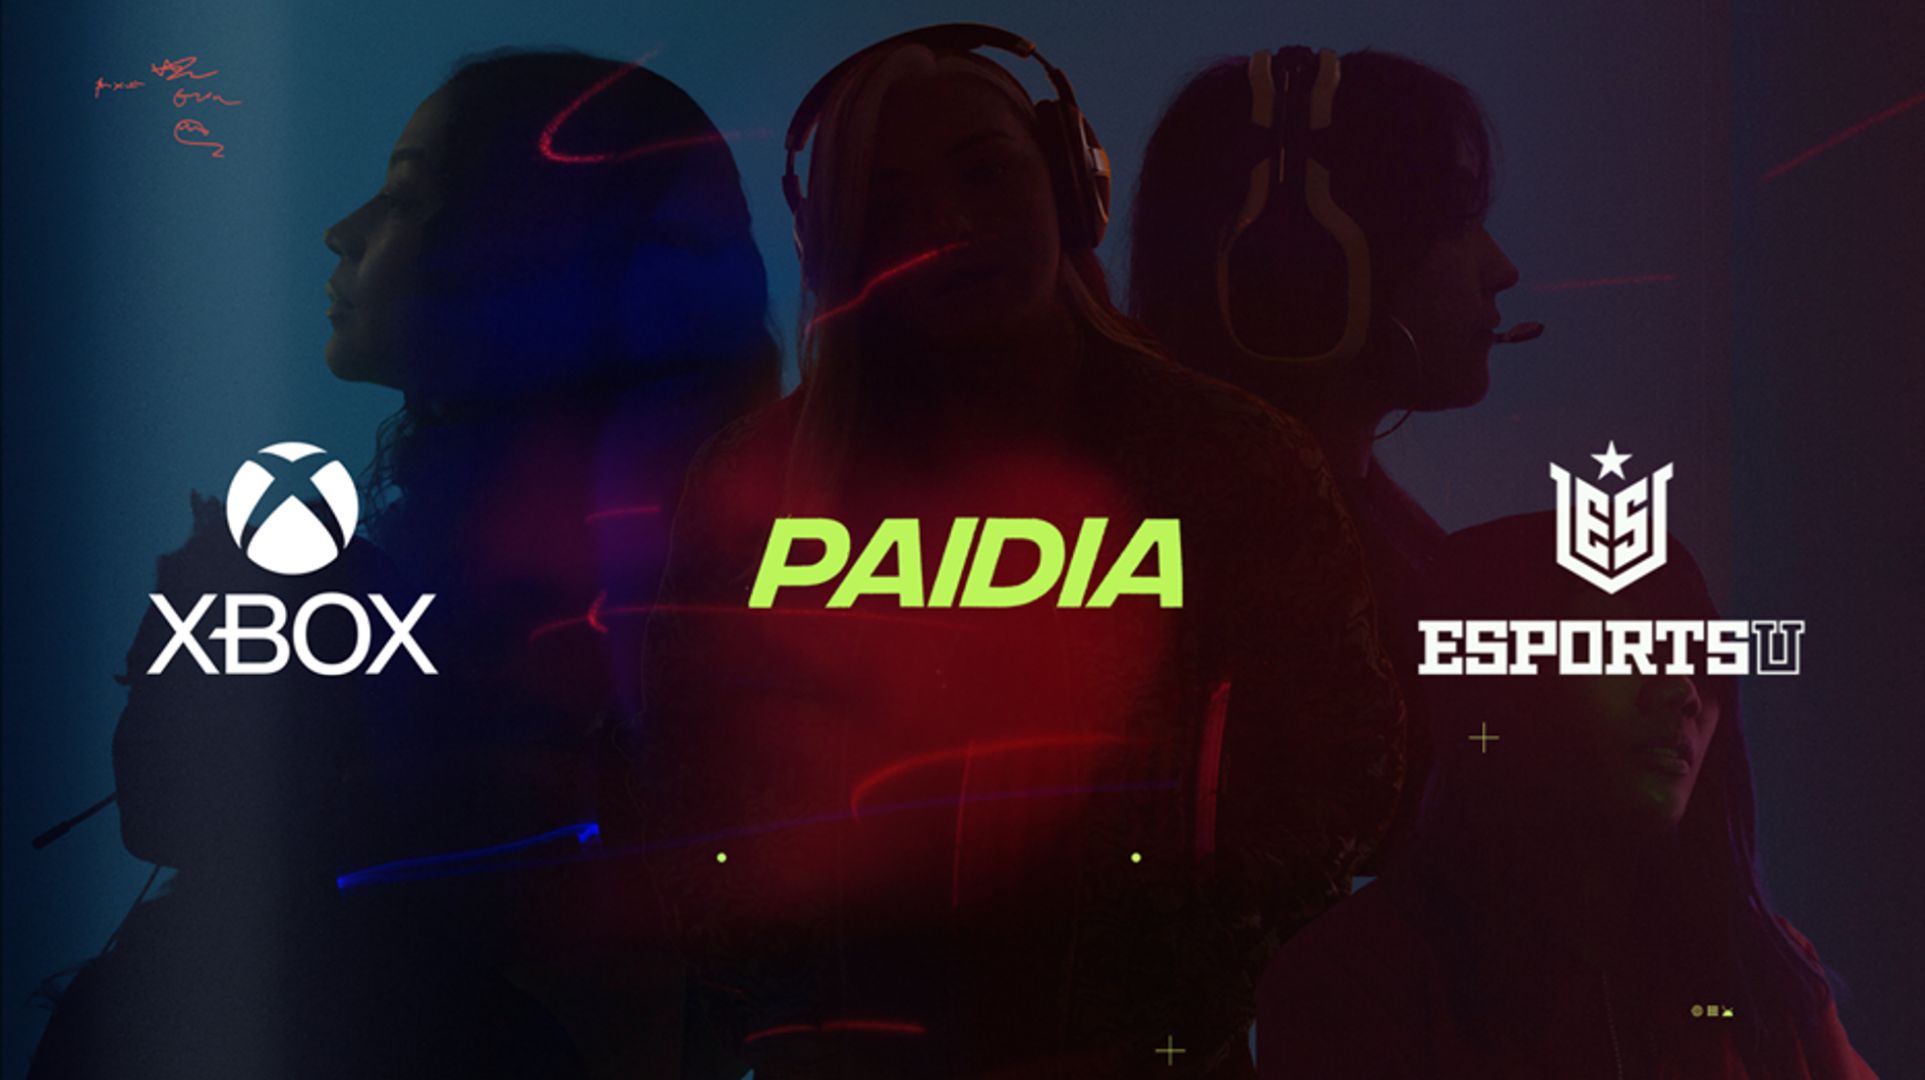 شعارات Xbox و Paidia و EsportsU على صورة خمس لاعبات تدل على الشراكة لتمكين وتضخيم الفرص للنساء في الألعاب.